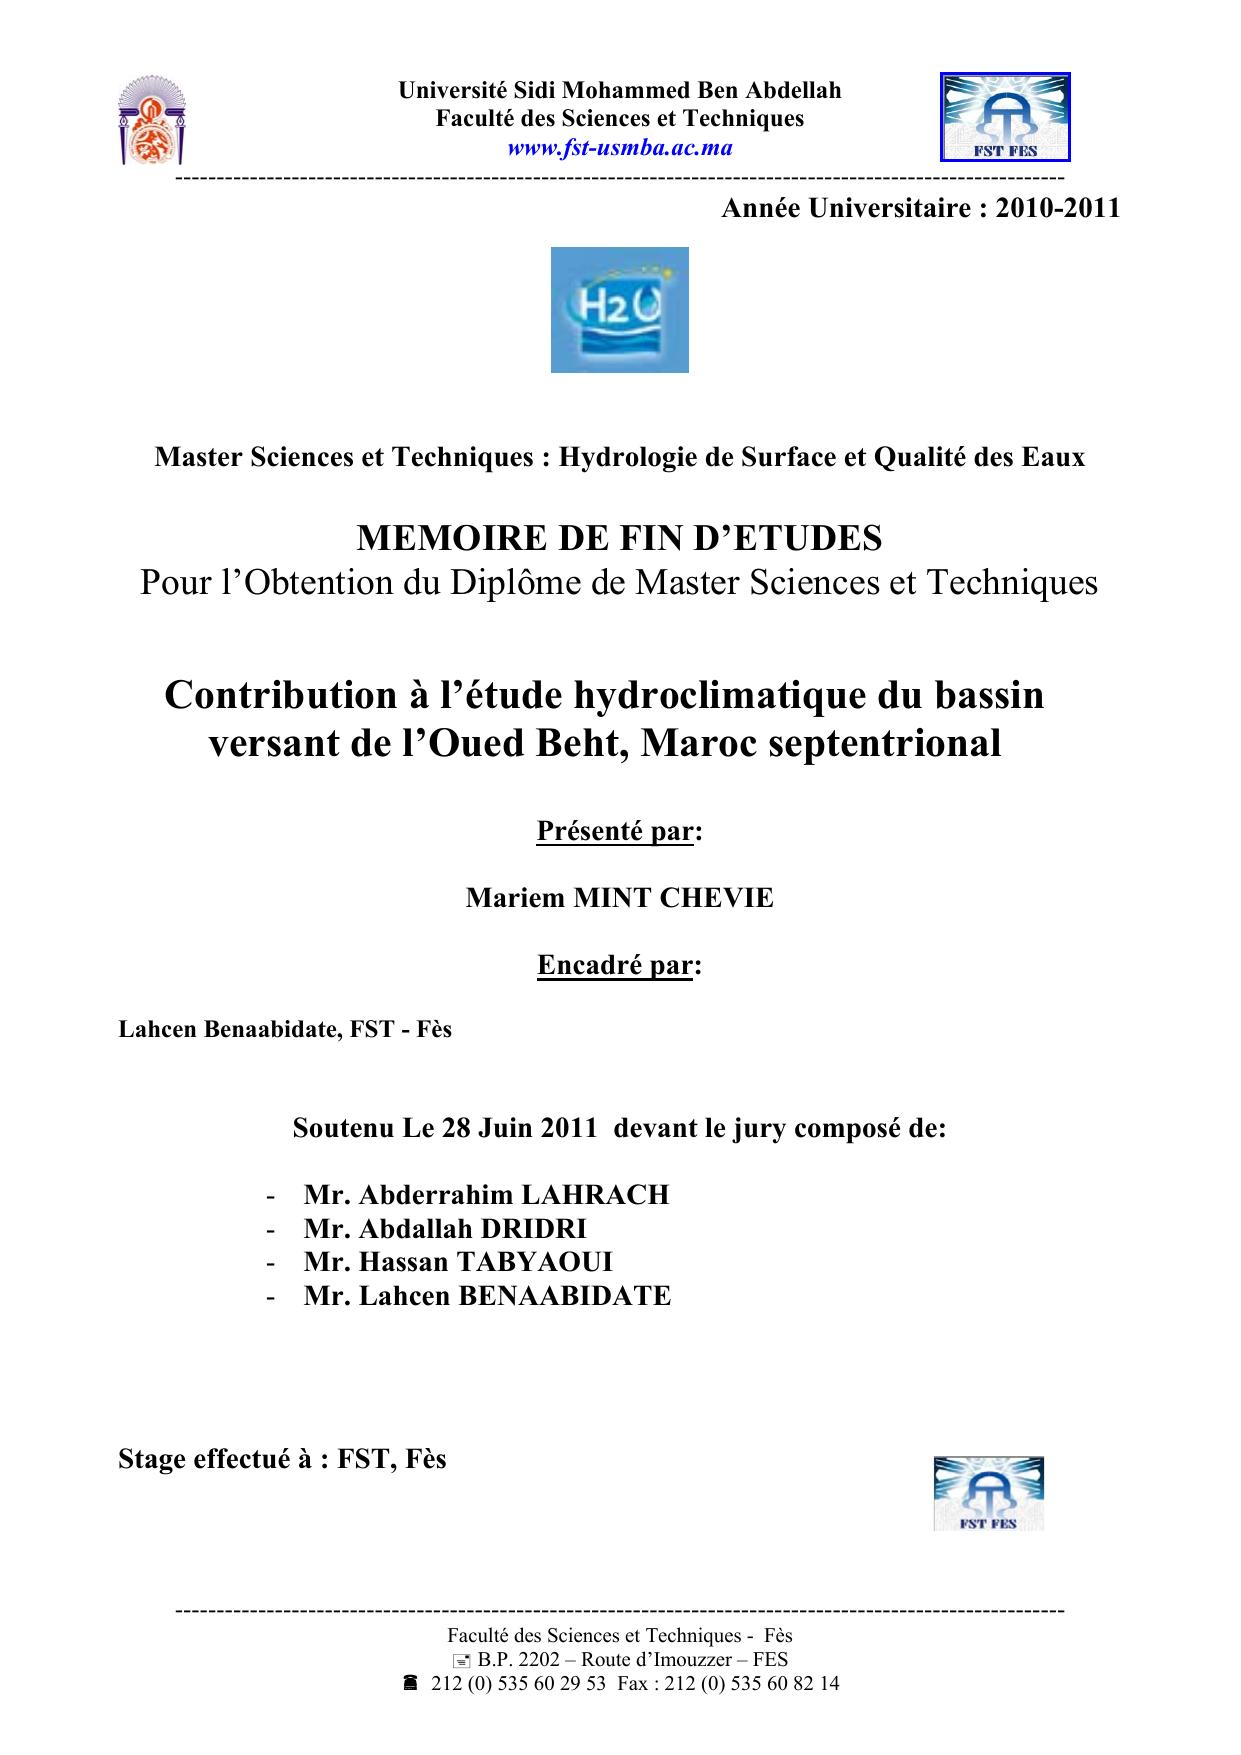 Contribution à l’étude hydroclimatique du bassin versant de l’Oued Beht, Maroc septentrional